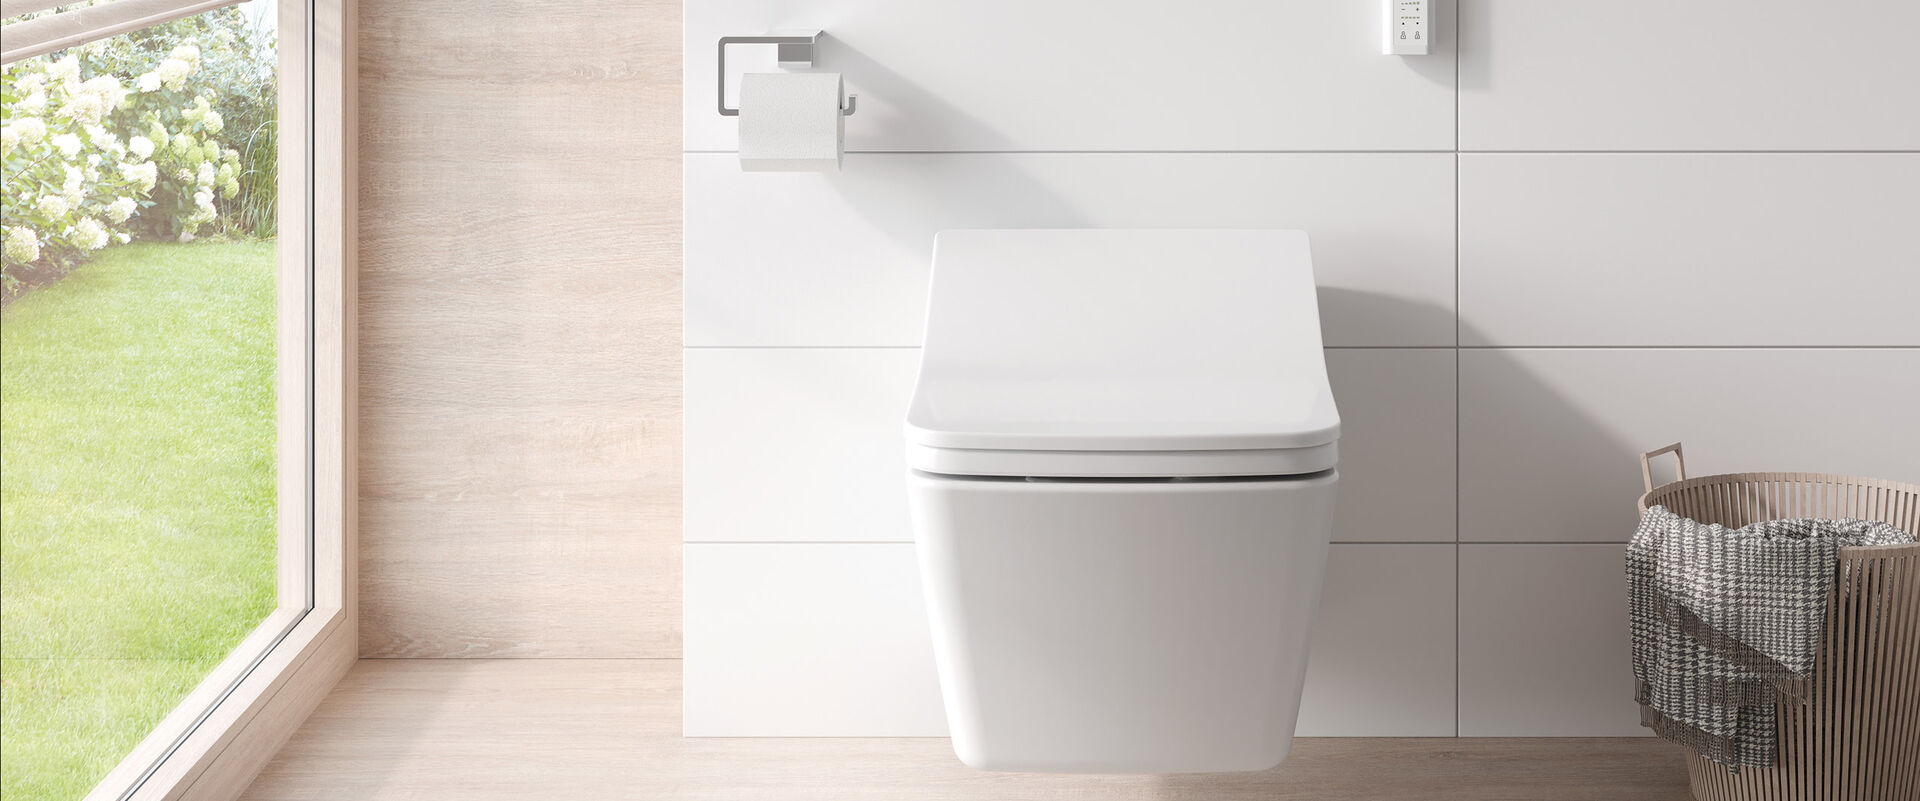 Dank moderne Technologien sorgt das TOTO Washlet für optimale und Komfortable Hygiene beim Toilettengang.